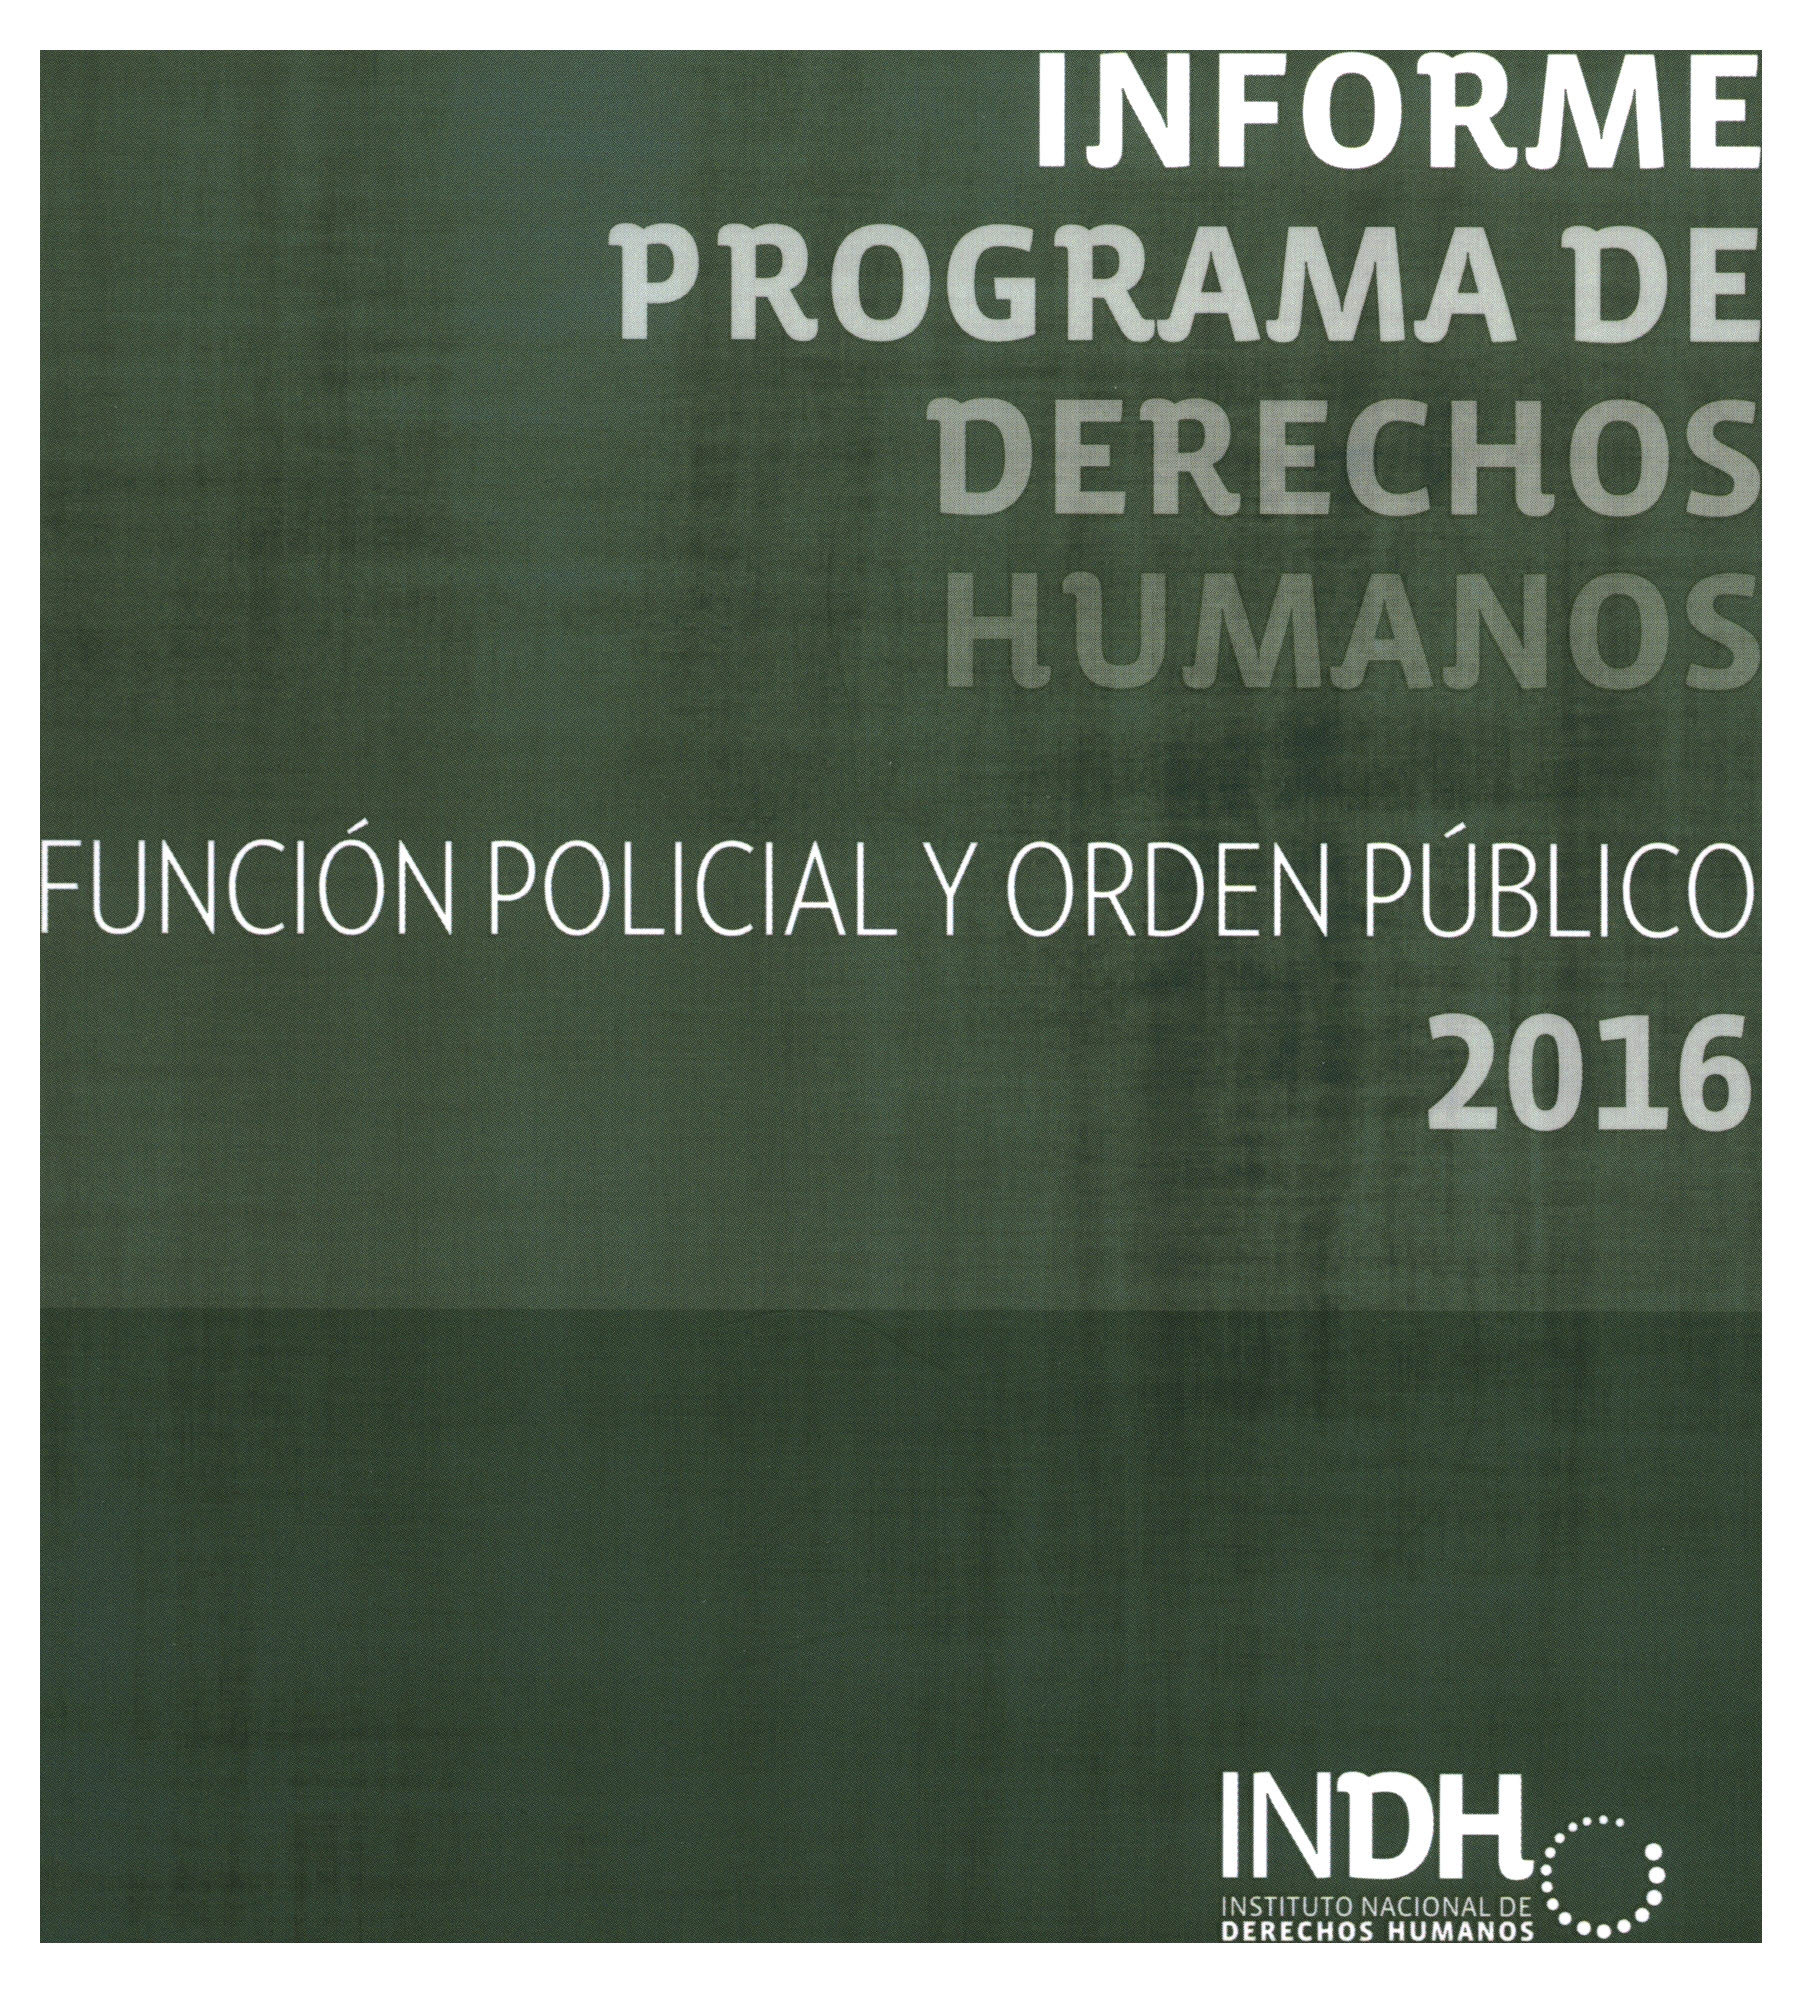 Informe Programa de Derechos Humanos, Función Policial y Orden Público 2016